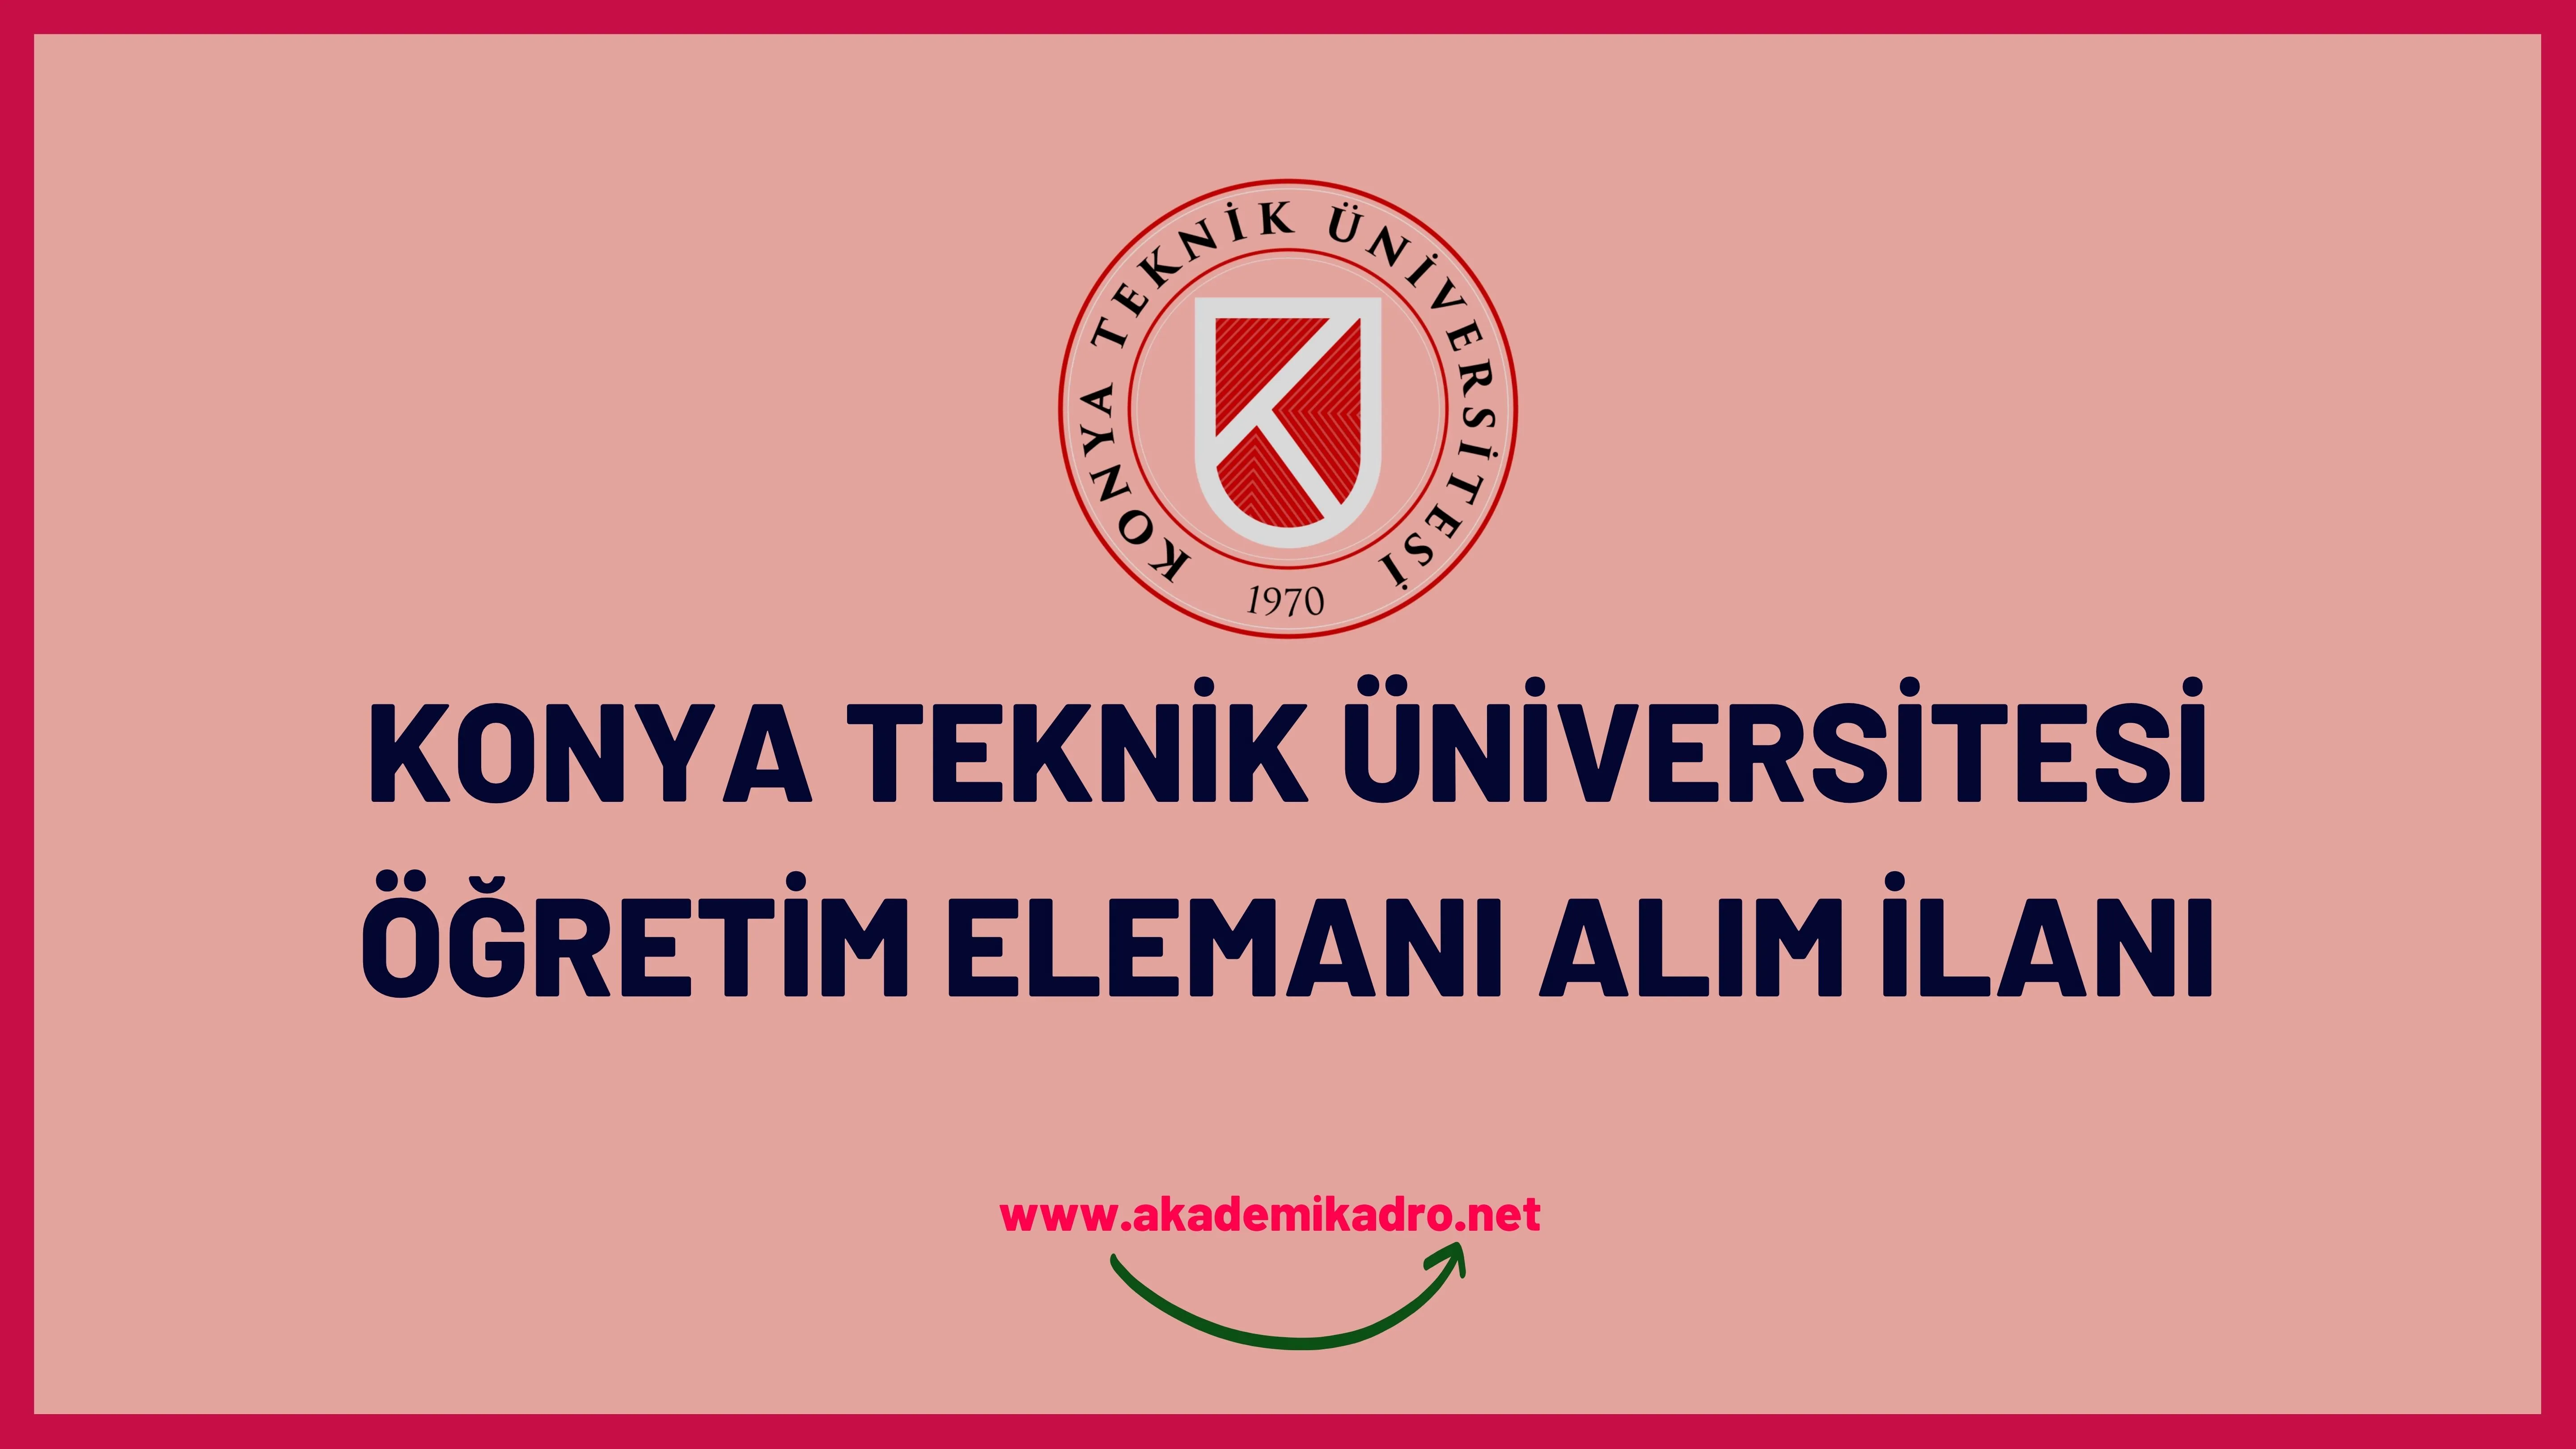 Konya Teknik Üniversitesi 17 öğretim üyesi, 11 Araştırma görevlisi ve 6 öğretim görevlisi alacaktır.